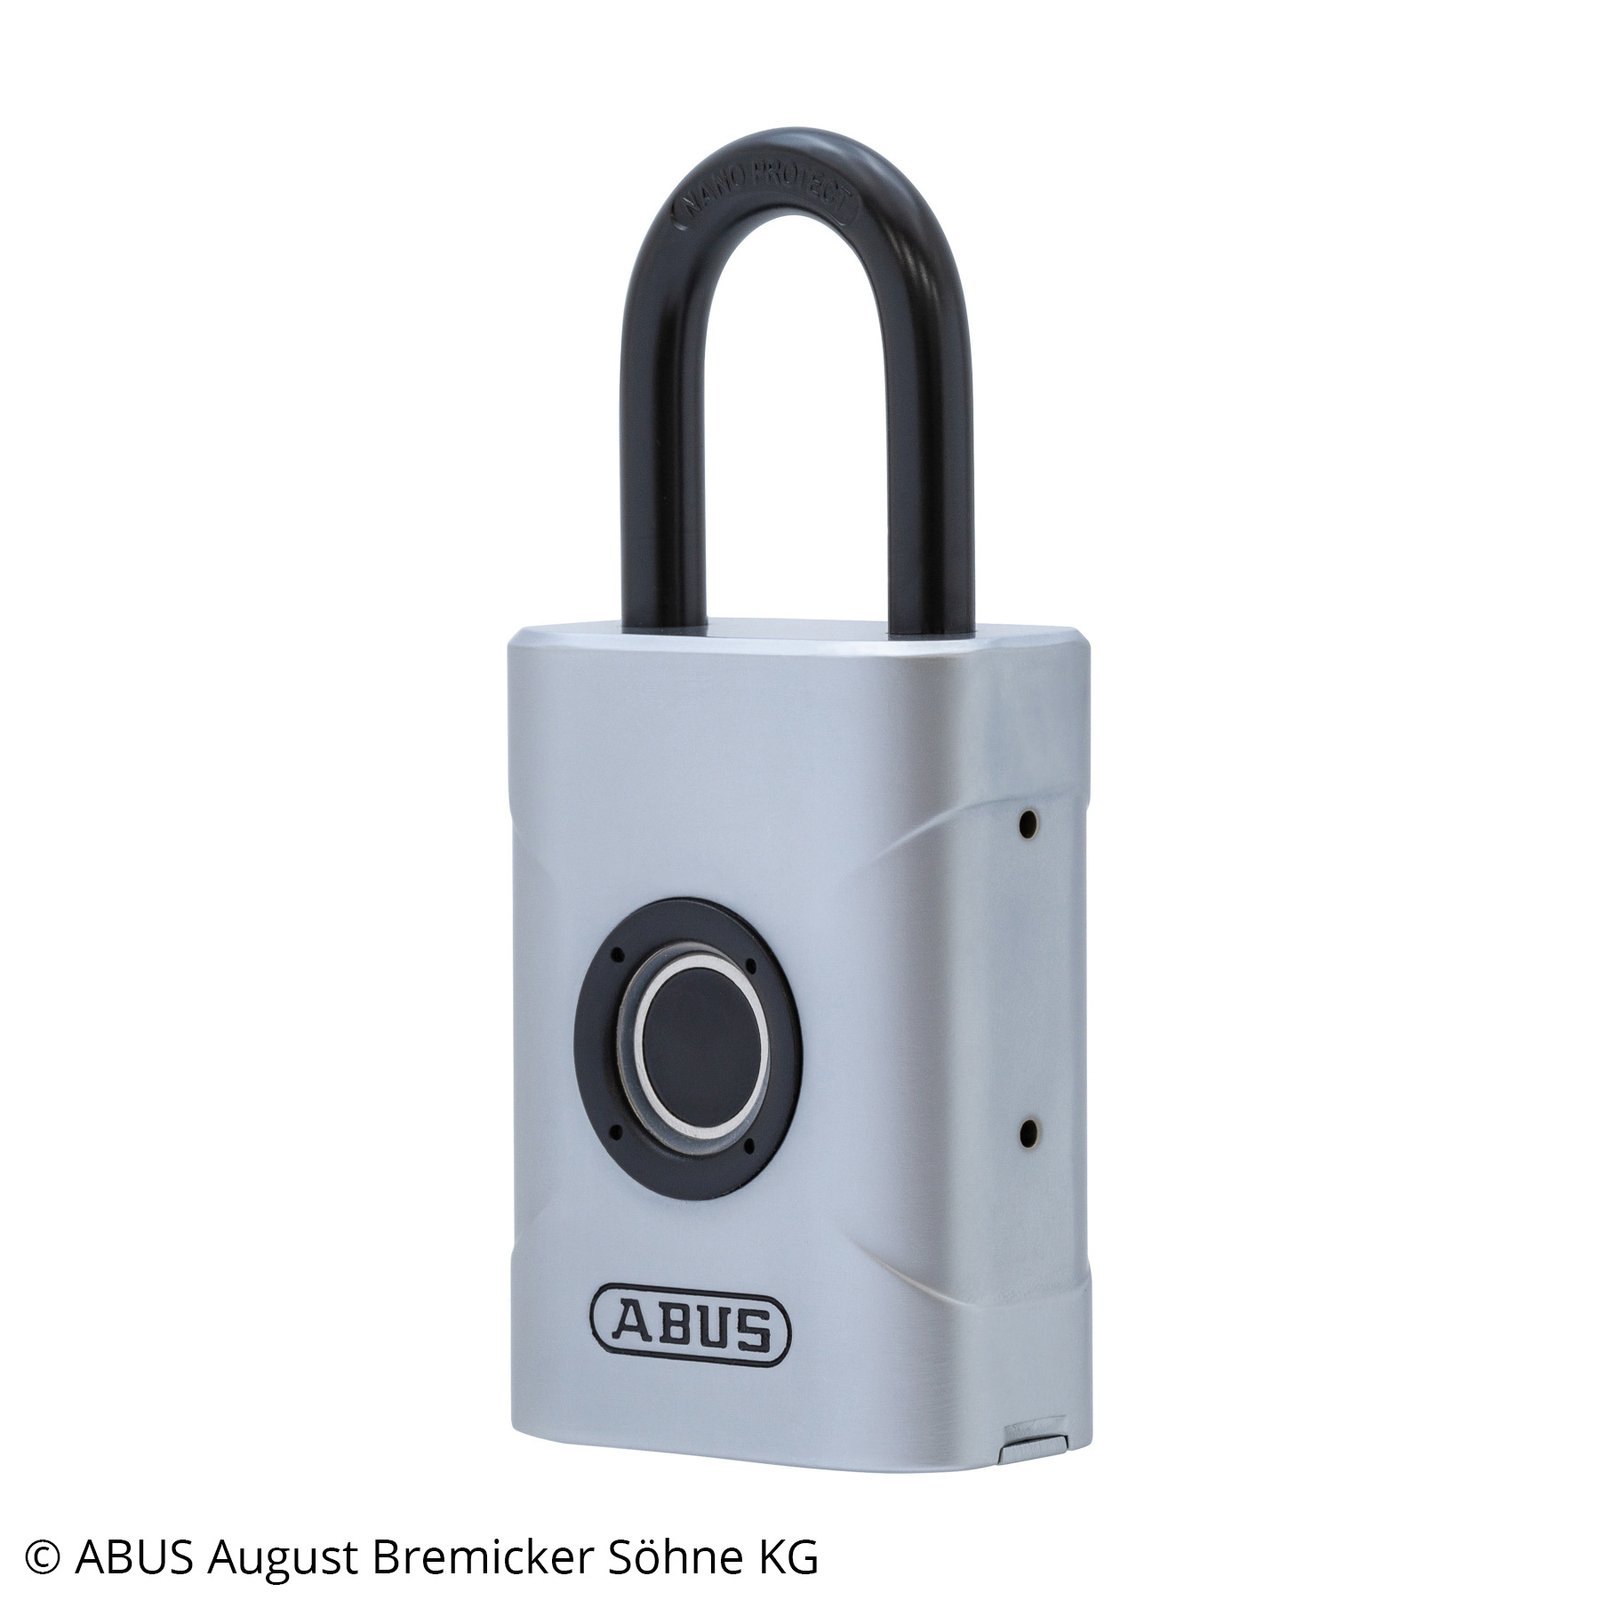 ABUS Touch fingerprint padlock, 4.5 cm